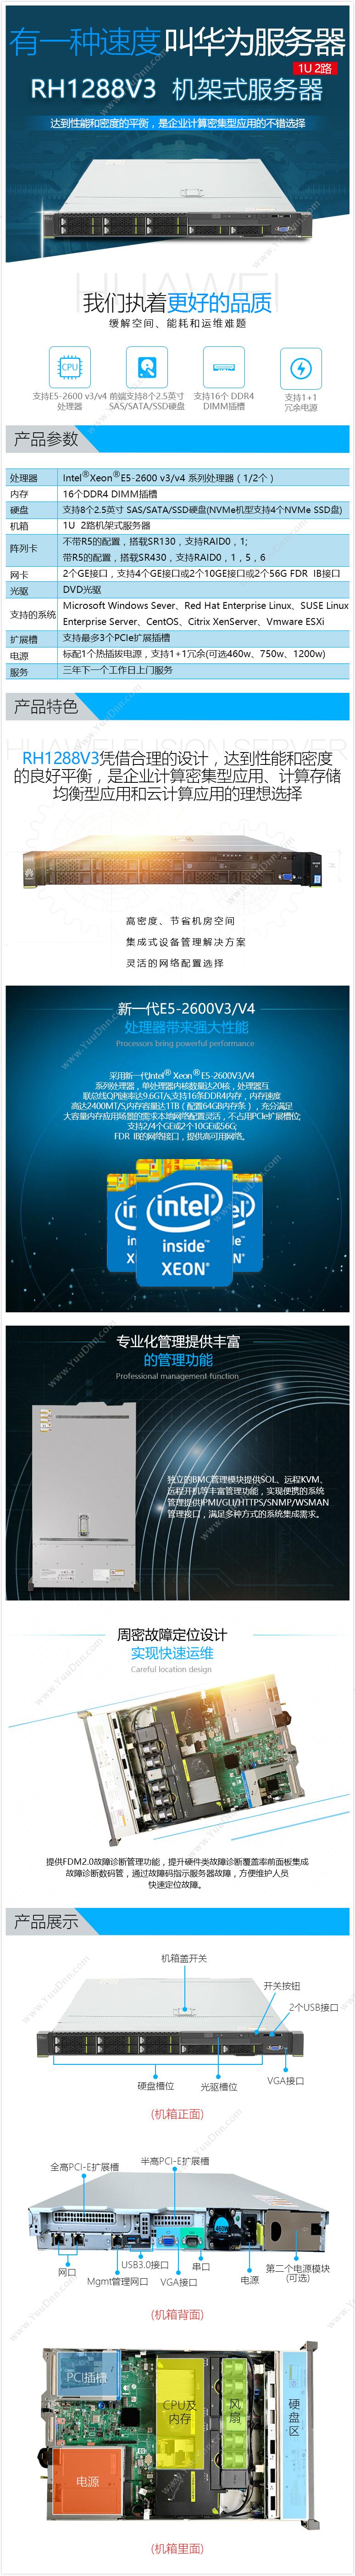 英特尔 Intel CM8065802482901SR2B1 服务器CPU